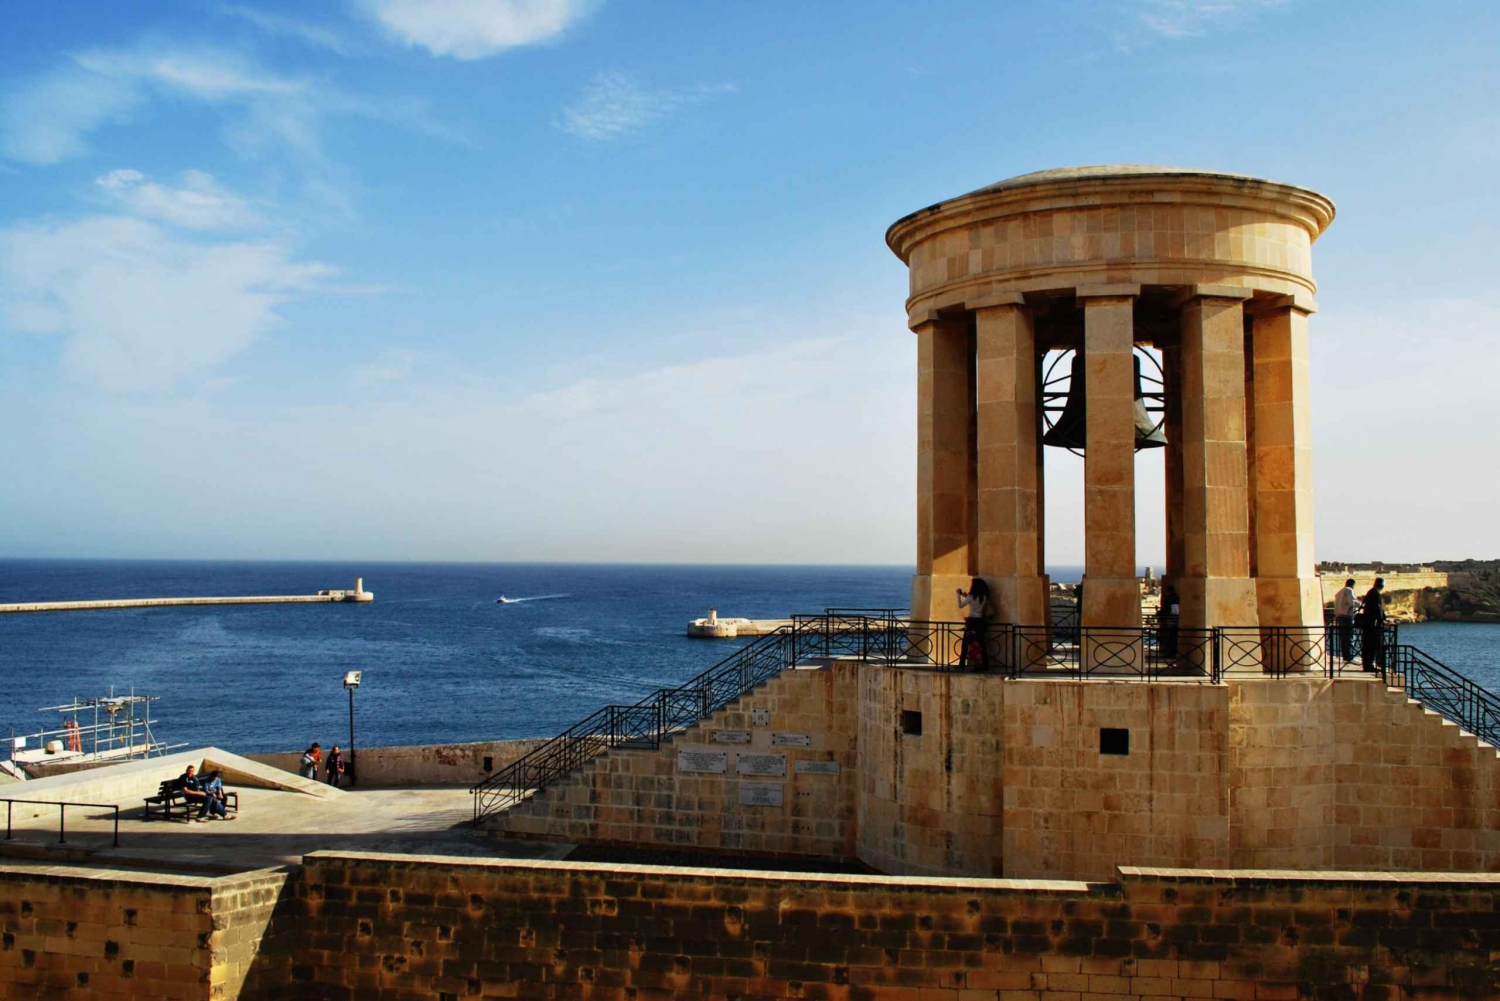 Visita a la ciudad de La Valeta: Catedral de San Juan, Experiencia en Malta